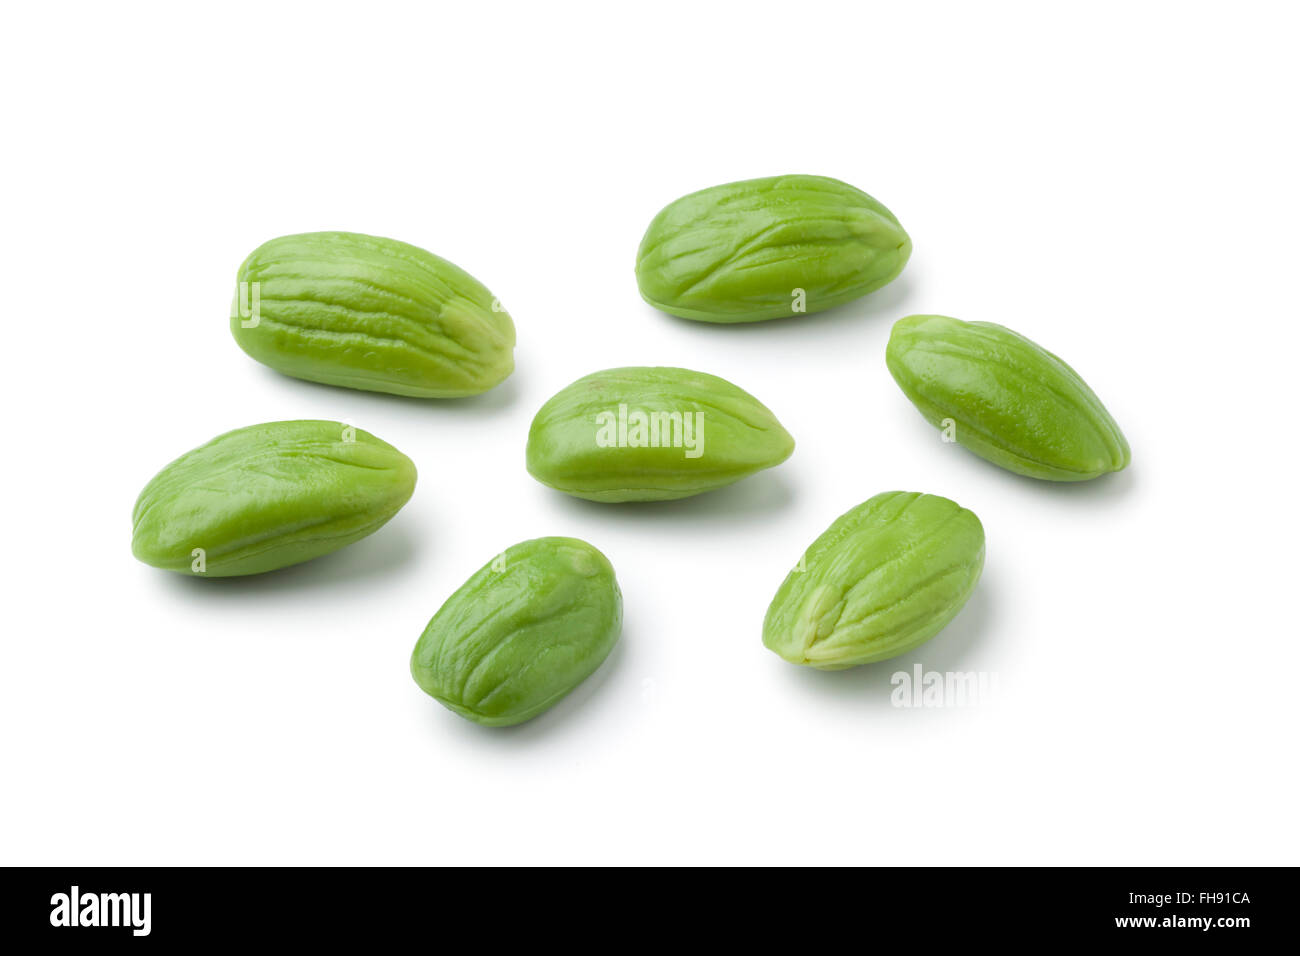 Whole fresh petai beans isolated on white background Stock Photo